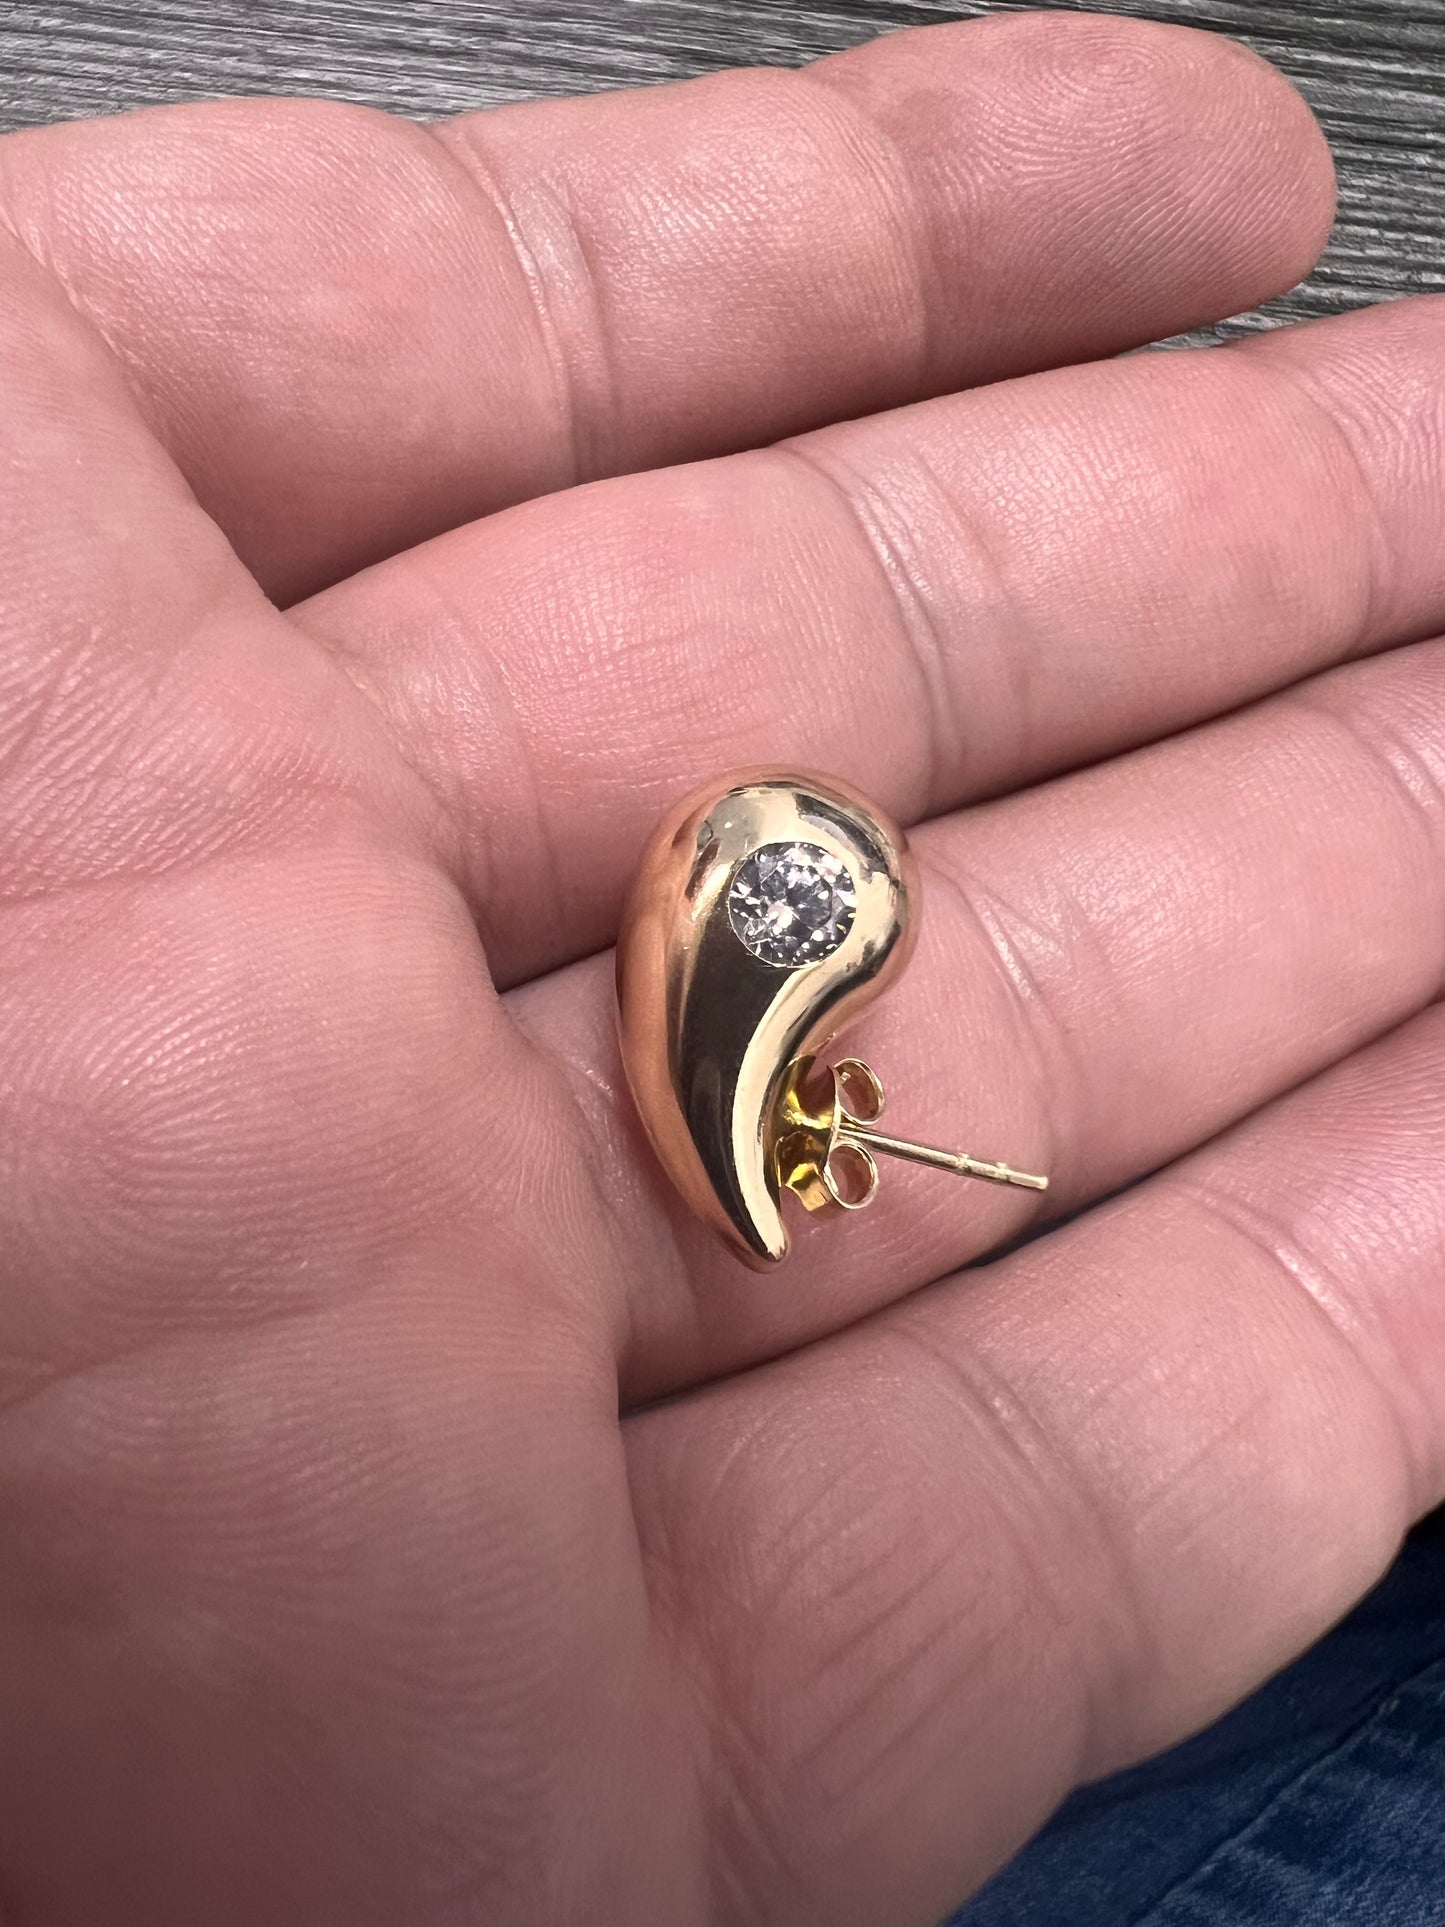 14K Yellow gold medium drop earrings-227130